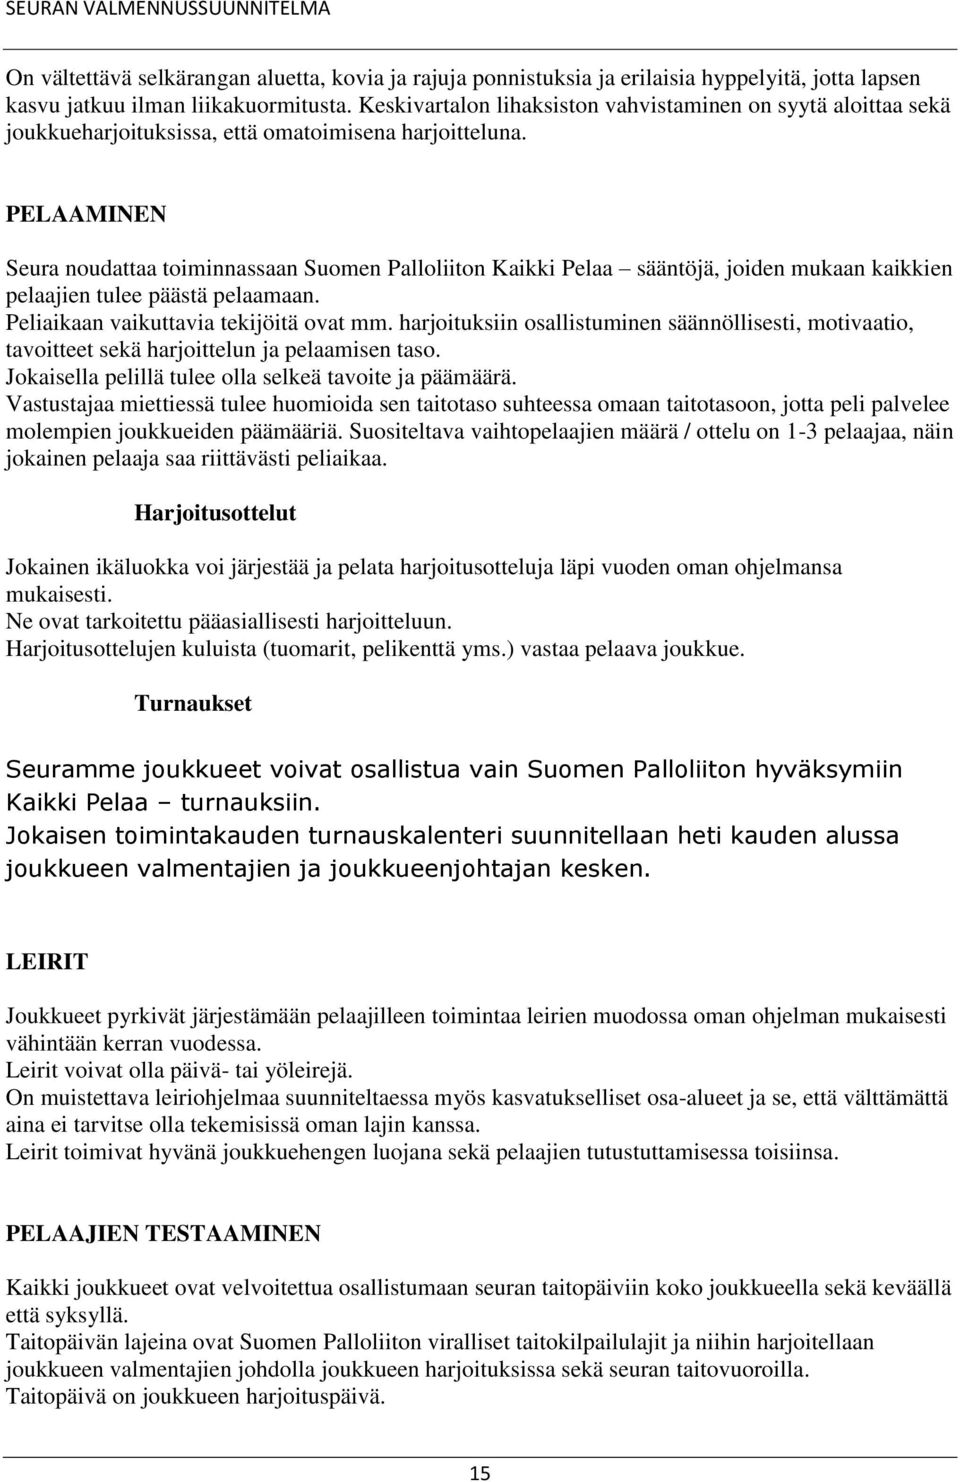 PELAAMINEN Seura noudattaa toiminnassaan Suomen Palloliiton Kaikki Pelaa sääntöjä, joiden mukaan kaikkien pelaajien tulee päästä pelaamaan. Peliaikaan vaikuttavia tekijöitä ovat mm.